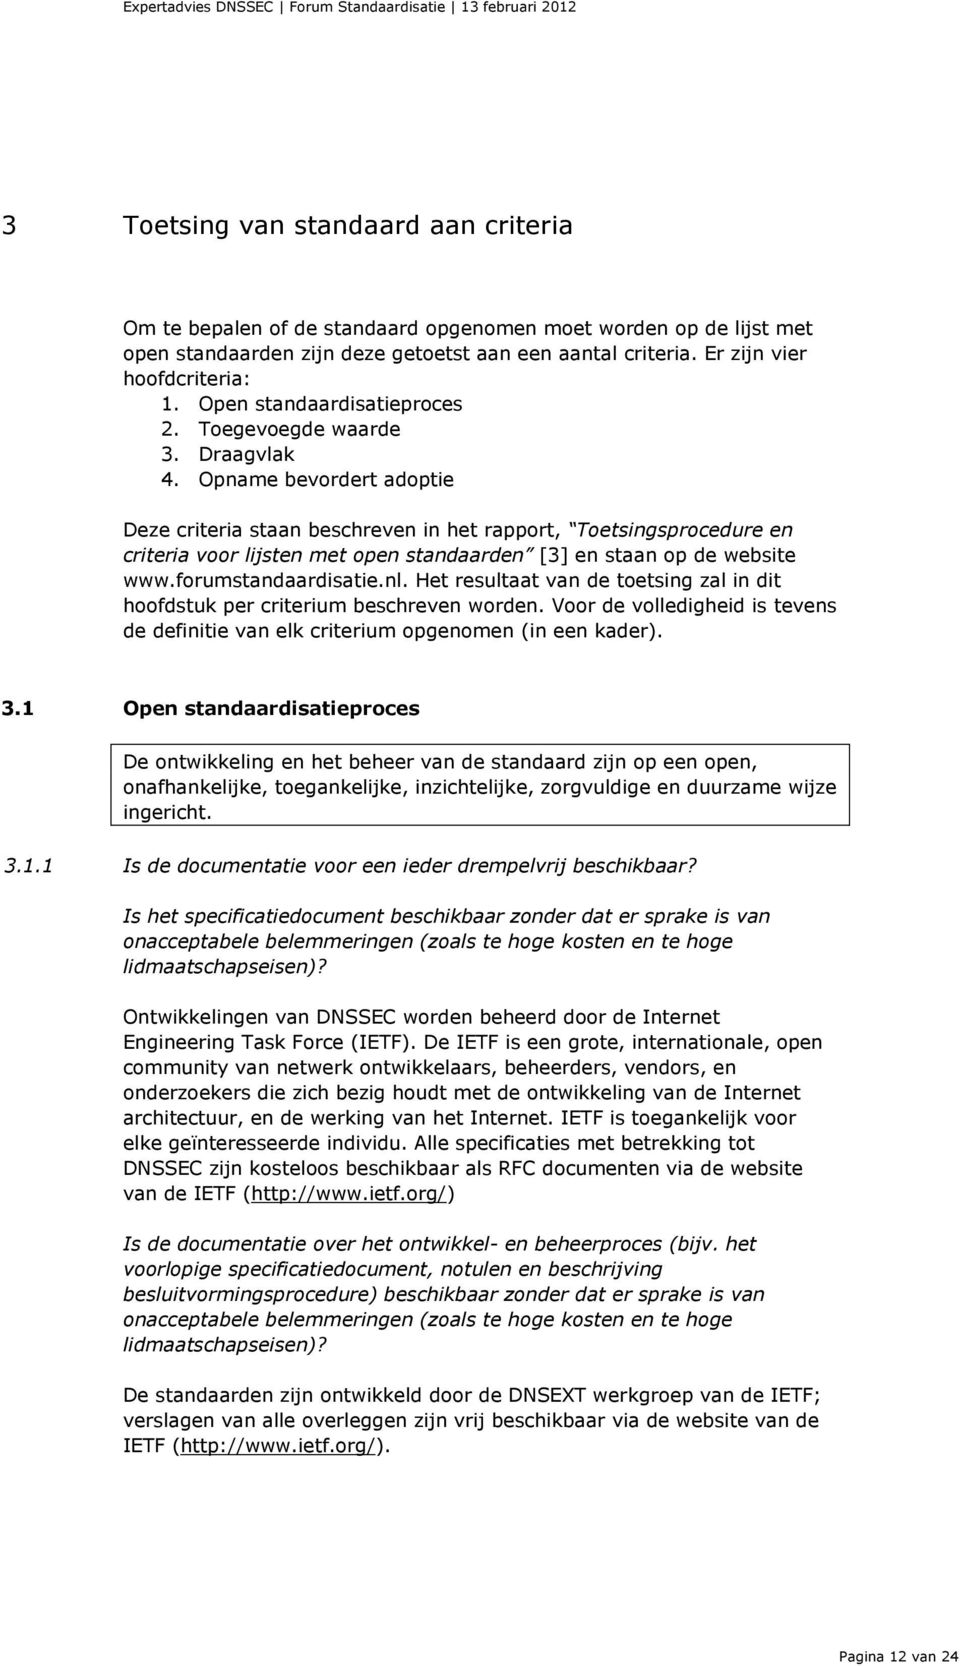 Opname bevordert adoptie Deze criteria staan beschreven in het rapport, Toetsingsprocedure en criteria voor lijsten met open standaarden [3] en staan op de website www.forumstandaardisatie.nl.